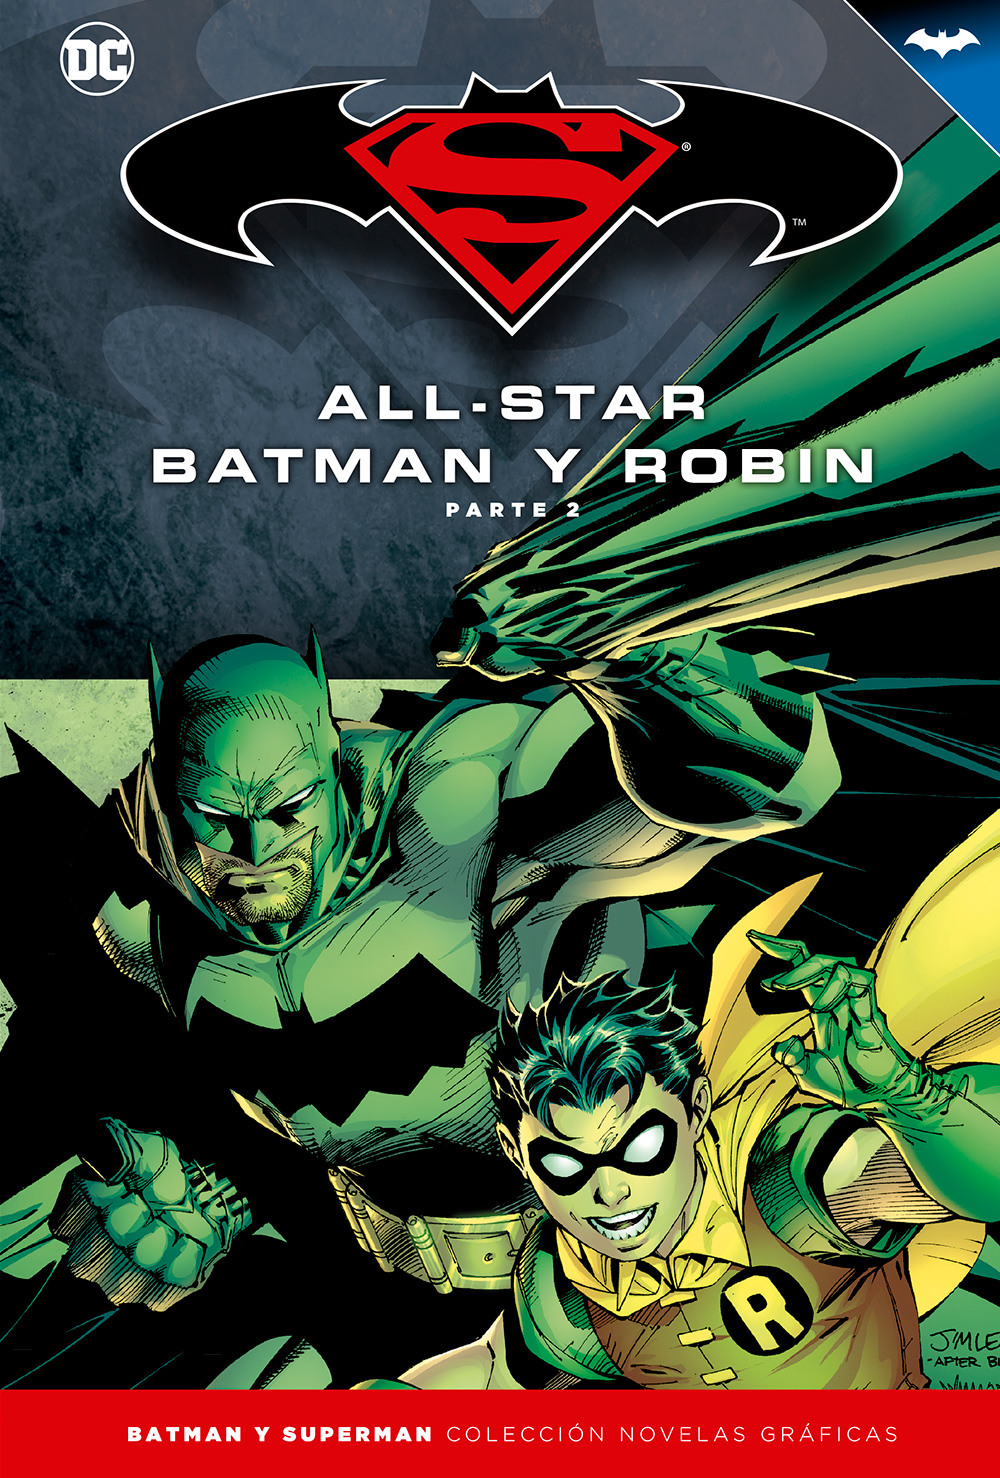 31 - [DC - Salvat] Batman y Superman: Colección Novelas Gráficas - Página 3 Portada_BMSM_3_AllStarBatman2